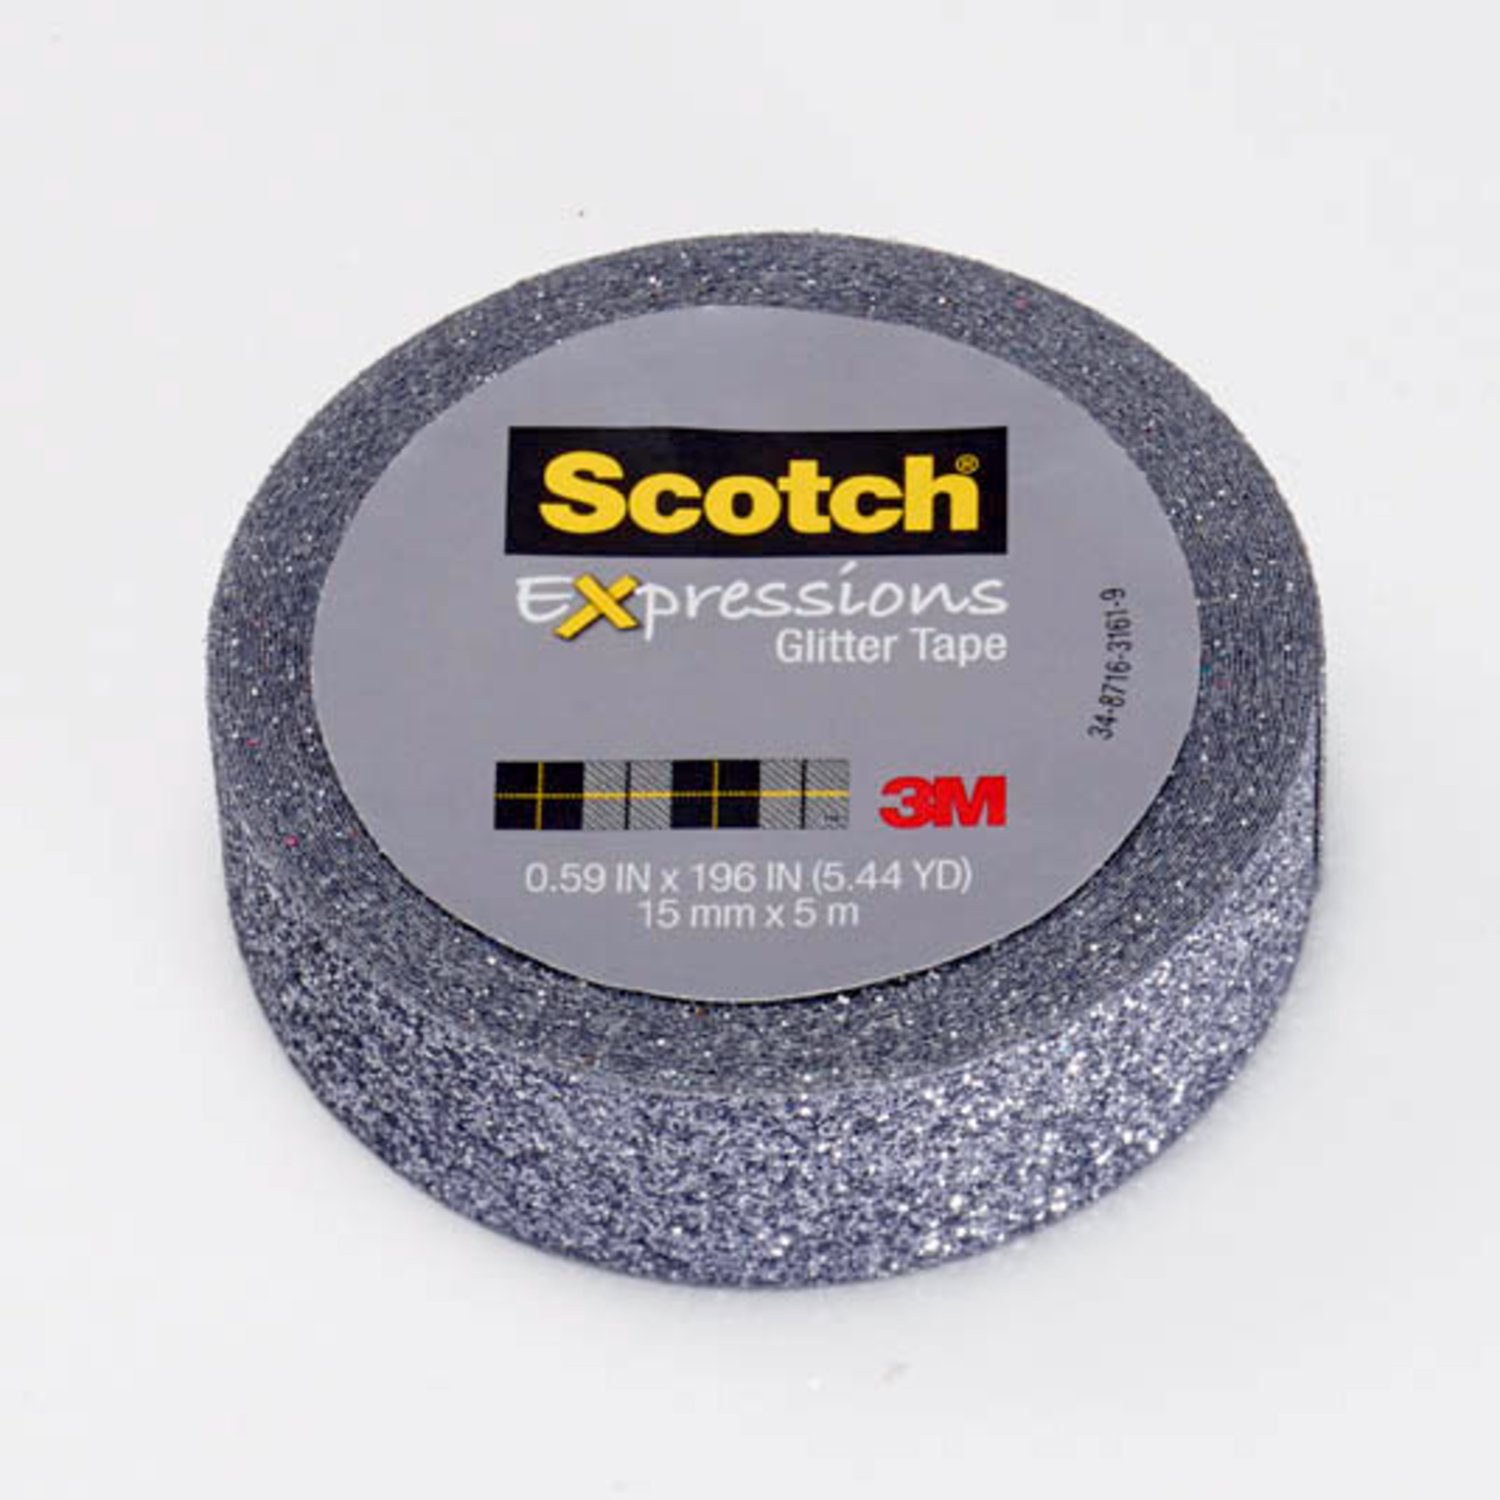 7100067681 - Scotch Expressions Glitter Tape C514-PLT, .59 in x 196 in (15 mm x 5 m)
Platinum Glitter